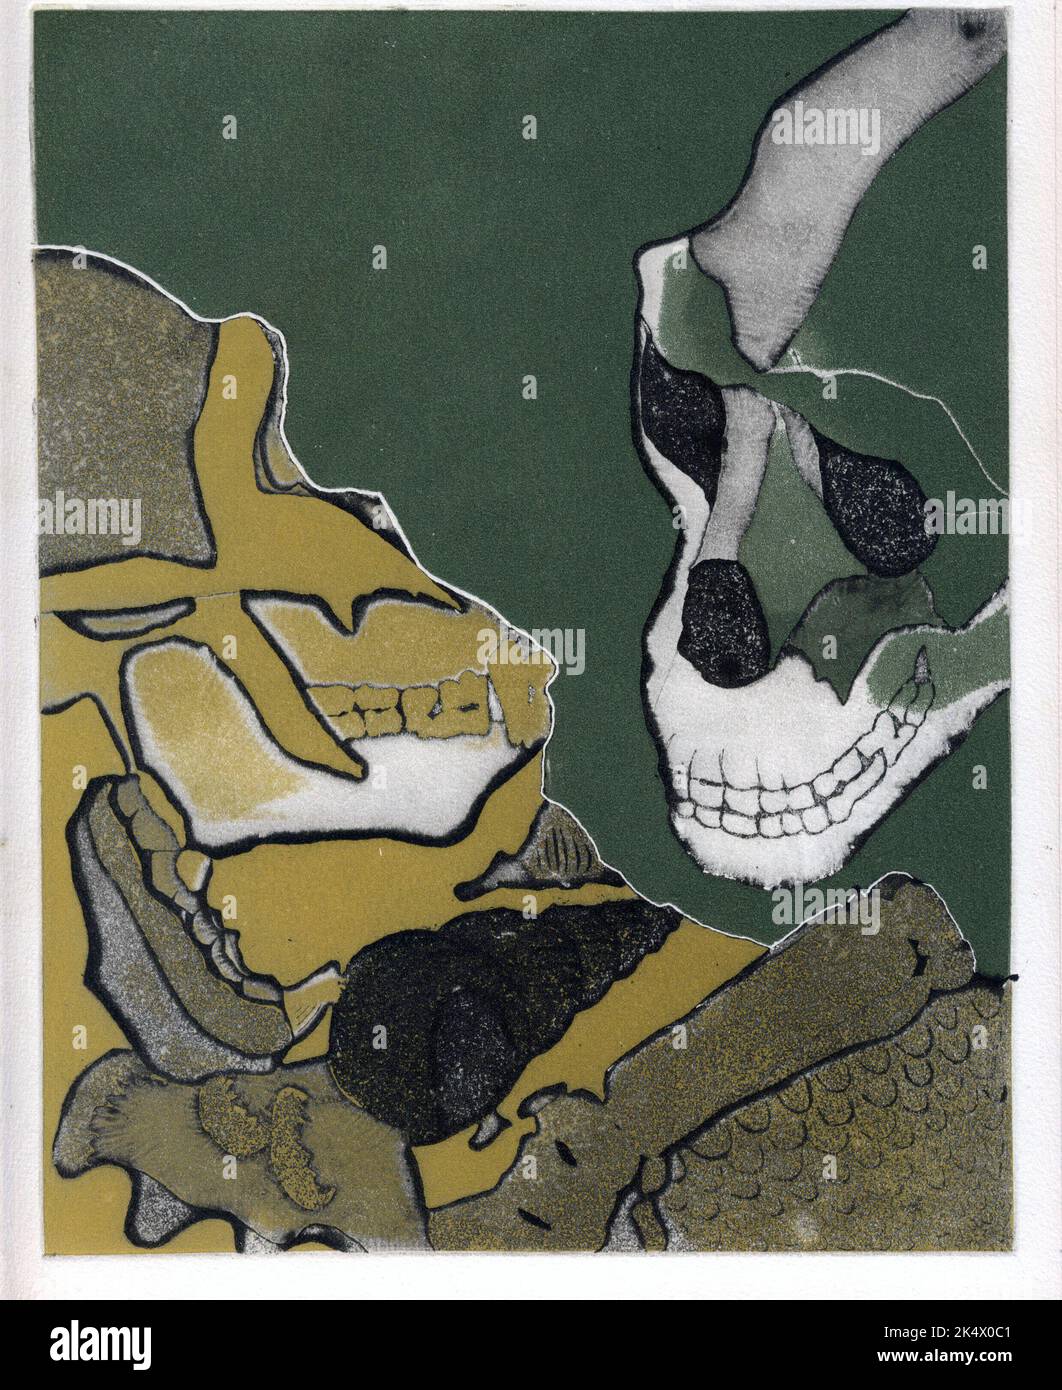 3 de 4 grabados que muestran dos cráneos gorila /homínidos, adecuados para portadas de libros, arte de revistas, evolución, biología, zoología, antropología, historia gótica Foto de stock